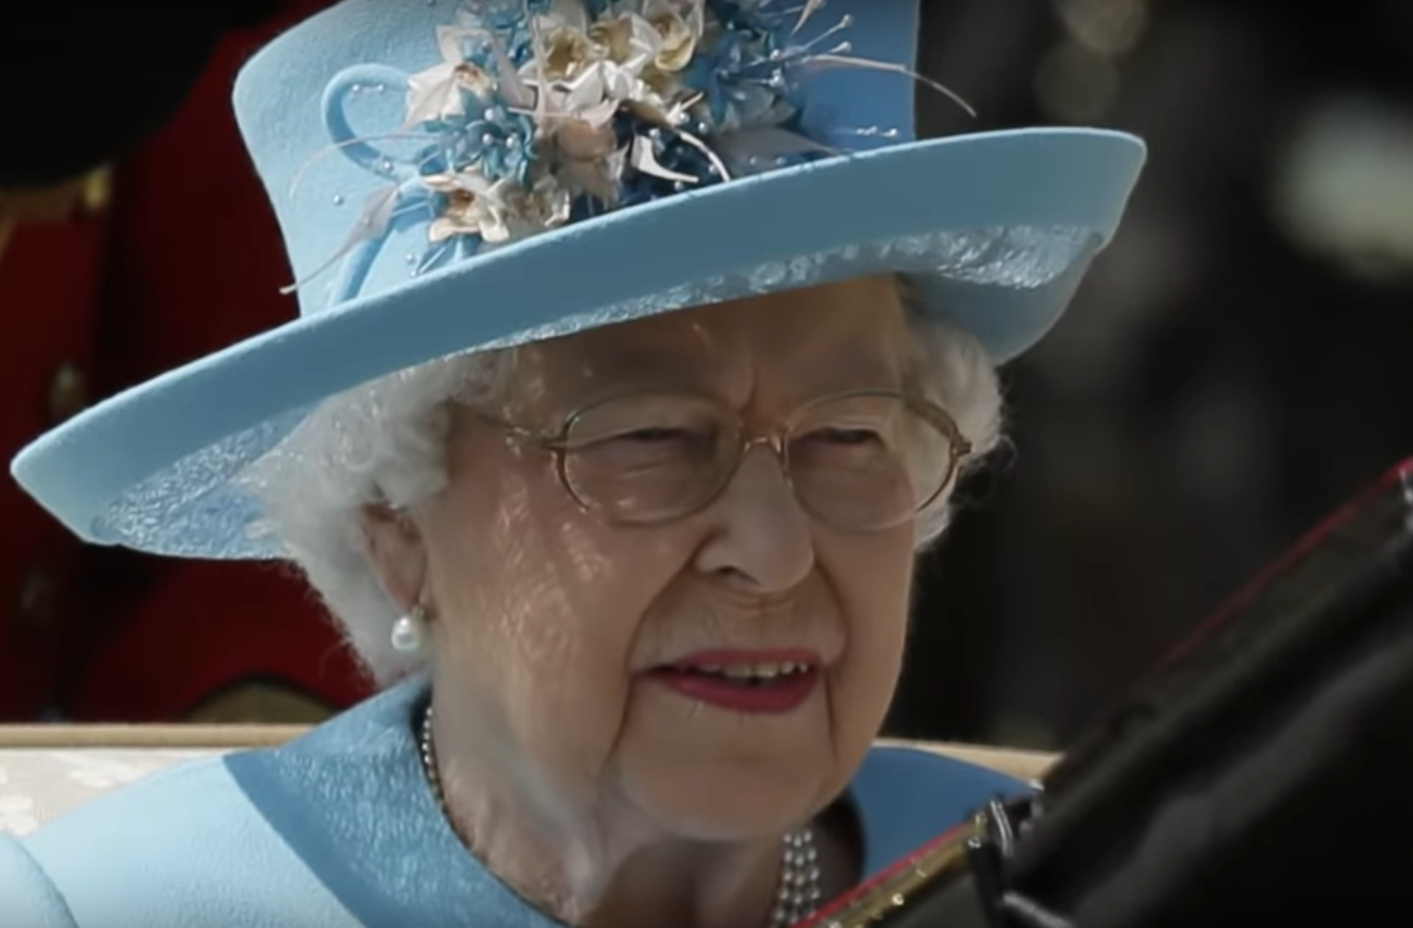 "Królowa Elżbieta umiera" - Szokujące doniesienia wydał tabloid, stwierdzono że królową UK trawi śmiertelna choroba, to nie pierwszy raz gdy ja usmiercają